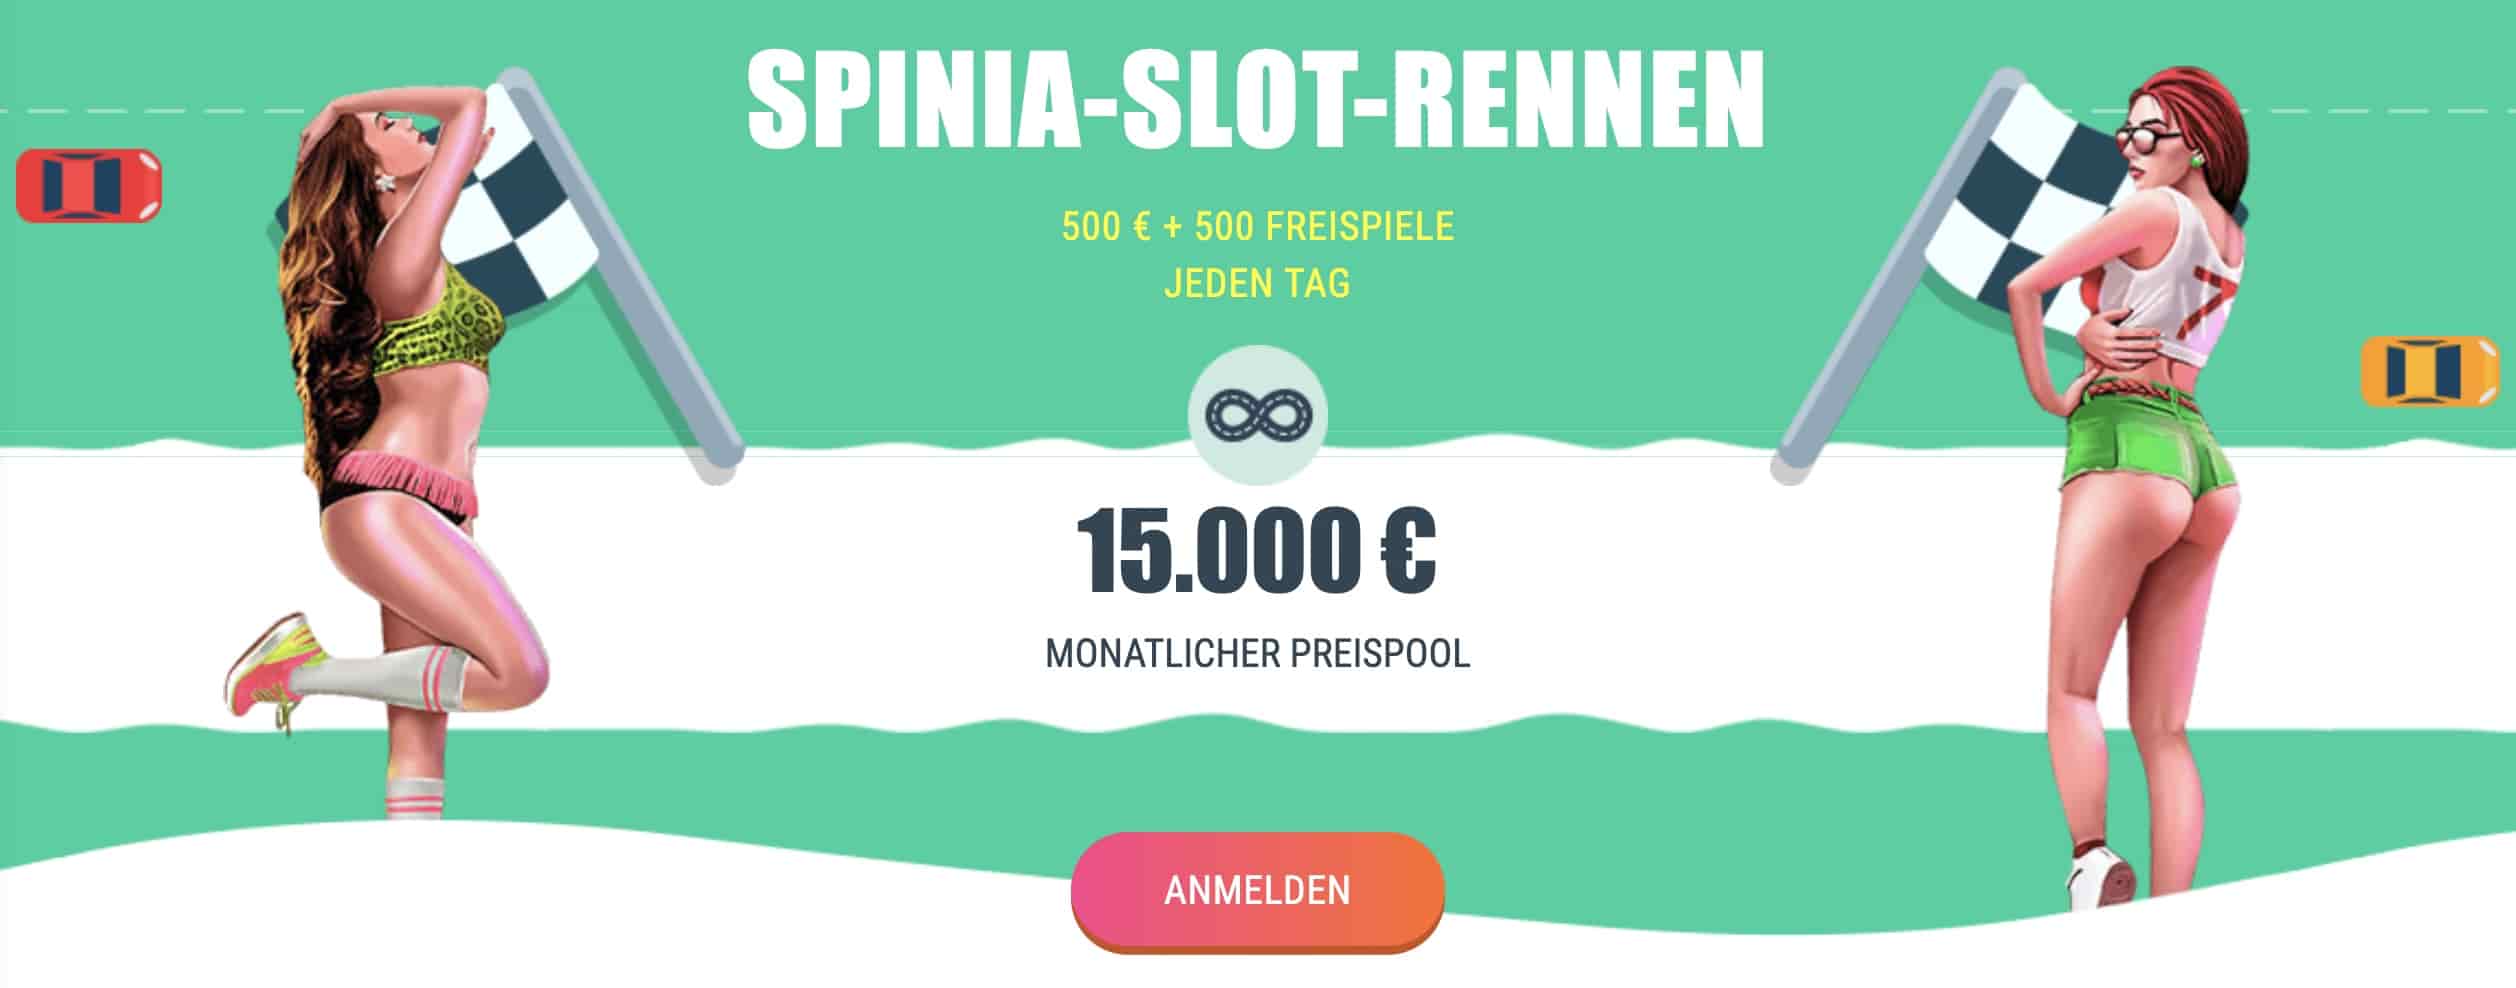 spinia casino bonus code